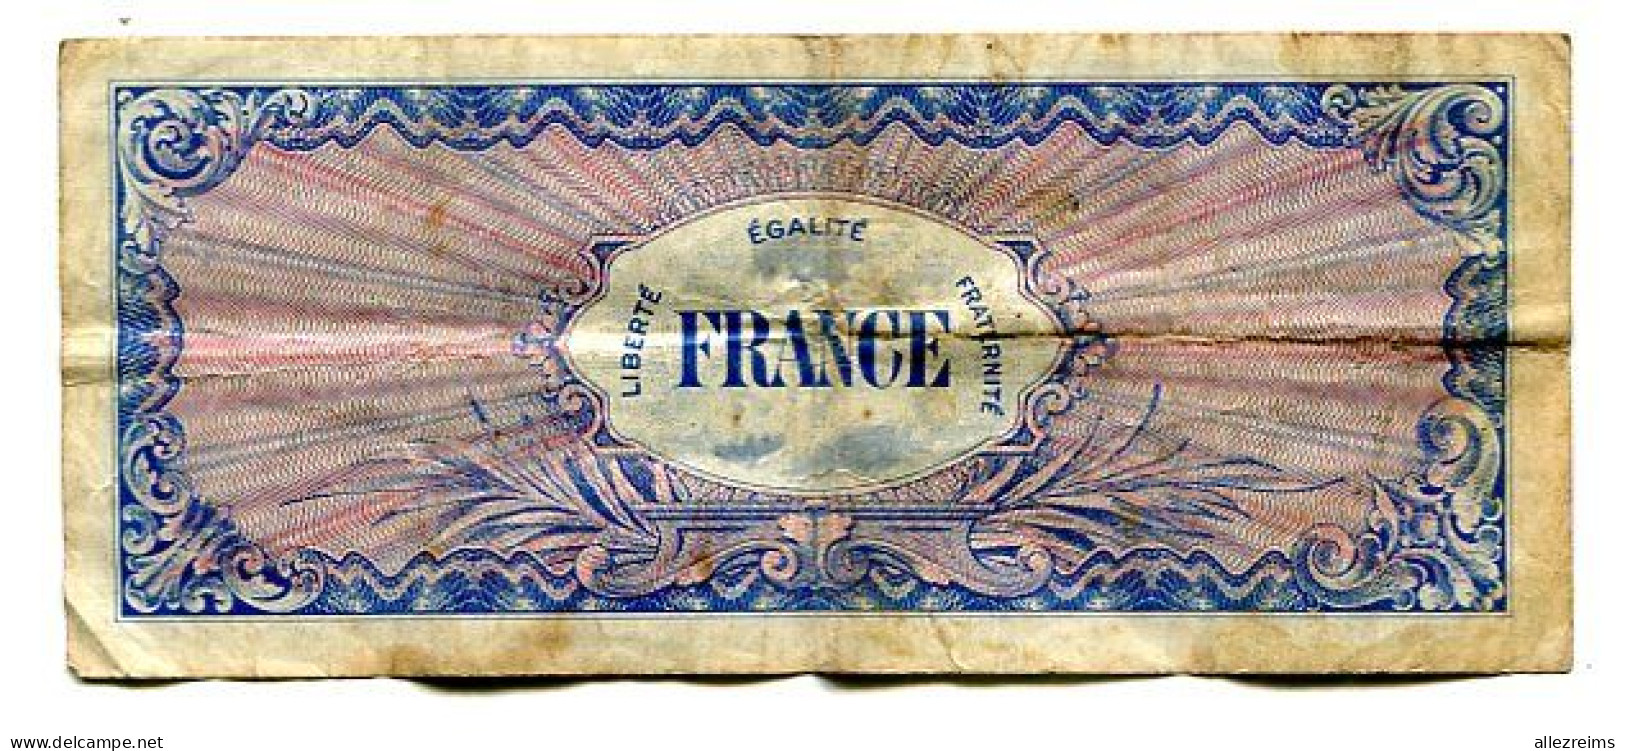 Billet De 100 F France  1944 Débarquement  VOIR ETAT  §§§ - 1944 Drapeau/Francia